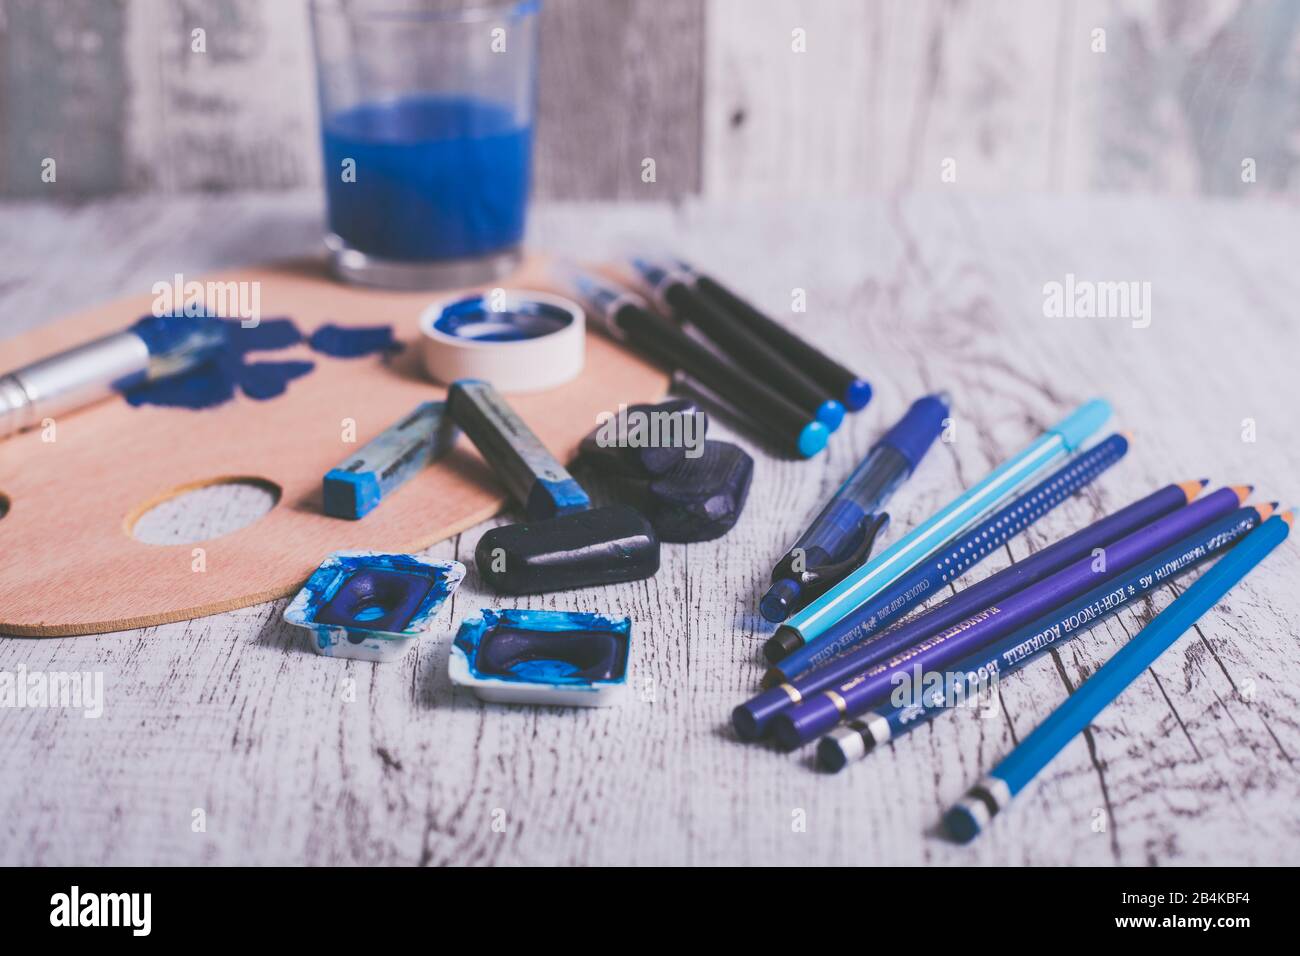 Disposition de différents stylos et ustensiles de peinture dans la couleur bleue Banque D'Images